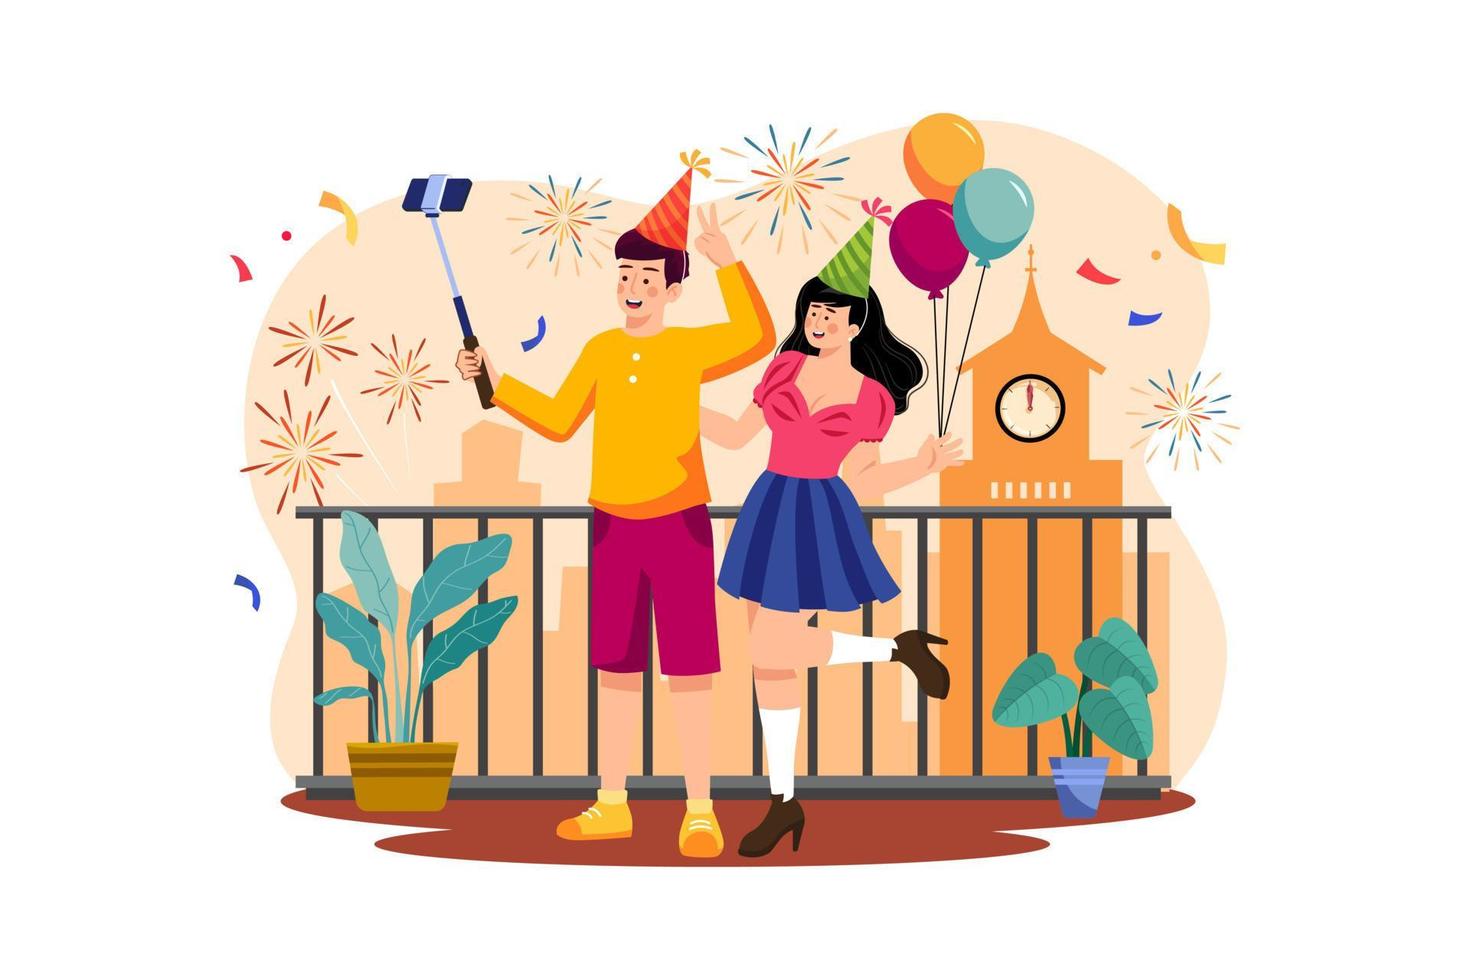 coppia che si fa un selfie per festeggiare il capodanno vettore